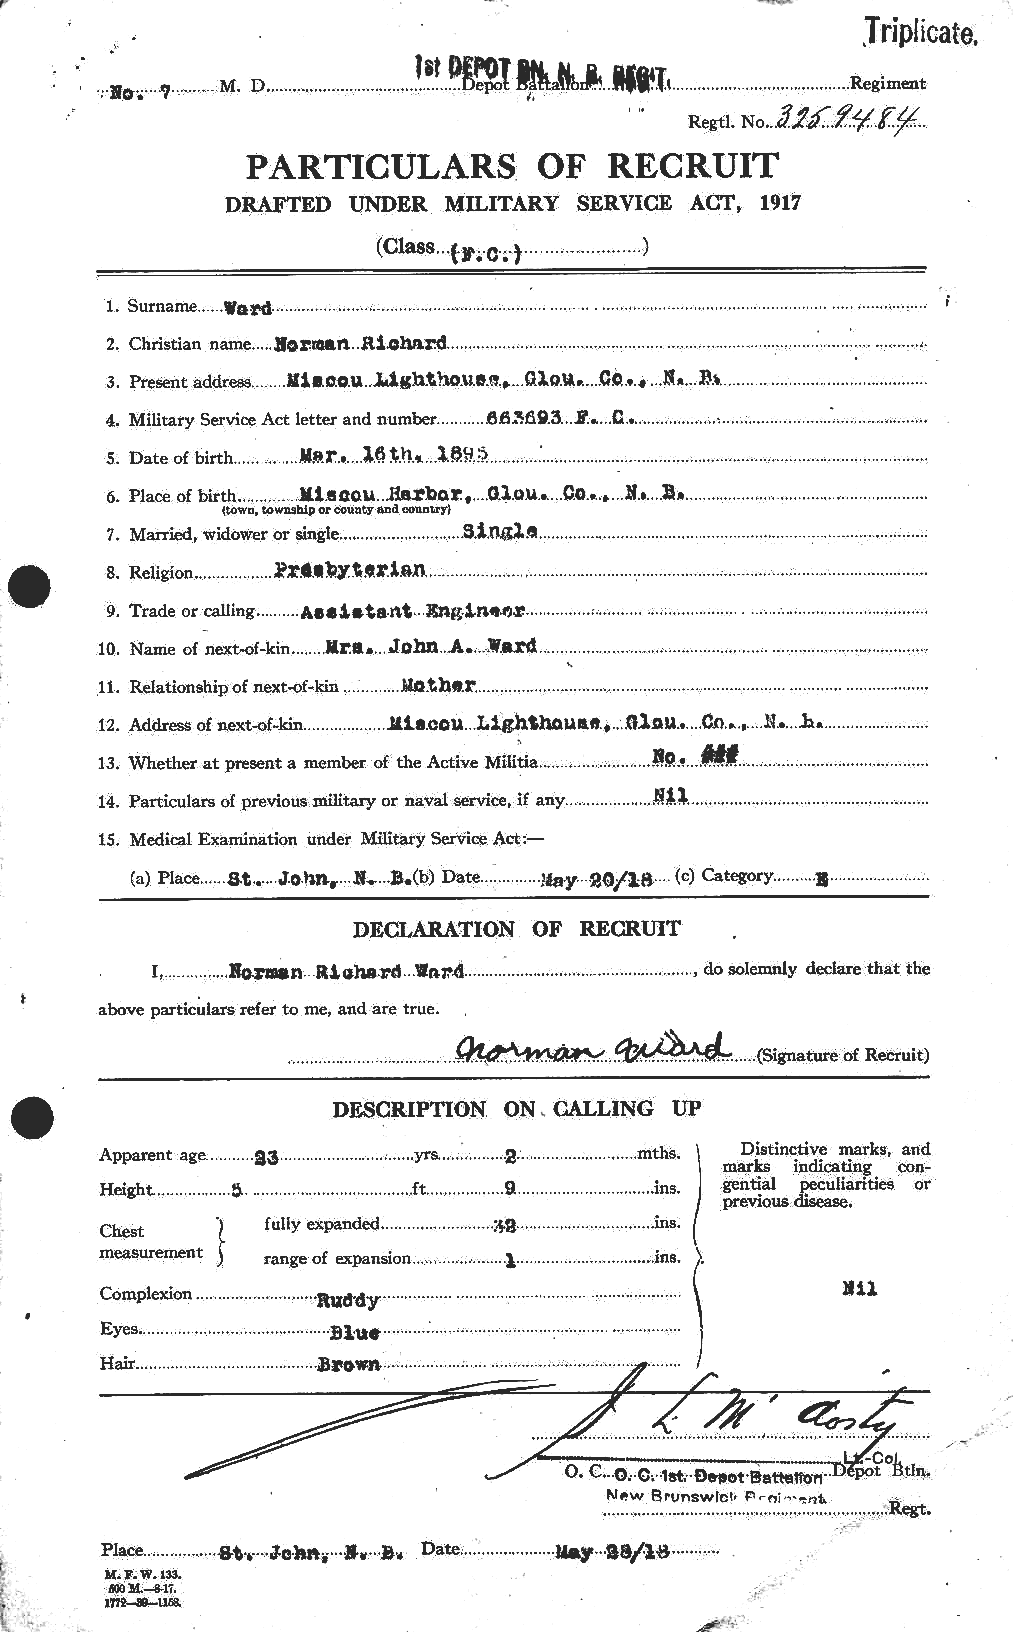 Dossiers du Personnel de la Première Guerre mondiale - CEC 659613a